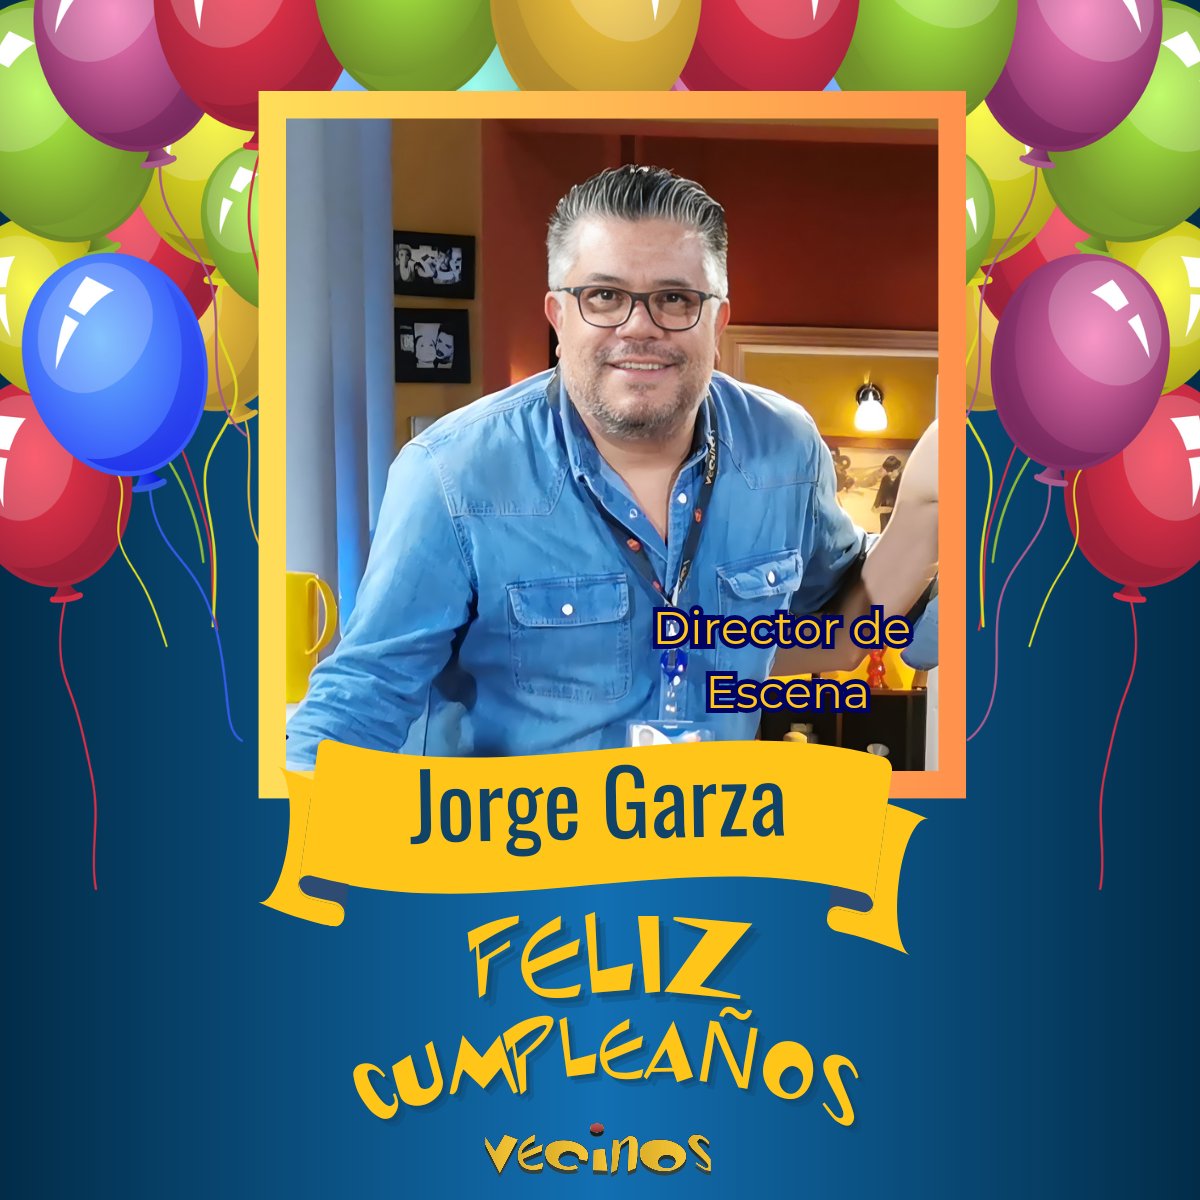 Hoy celebramos el cumpleaños de nuestro #DirectorDeEscena #JorgeGarza  ¡Felicidades! 

Qué cumpleañero, qué onomástico 🎂🥳